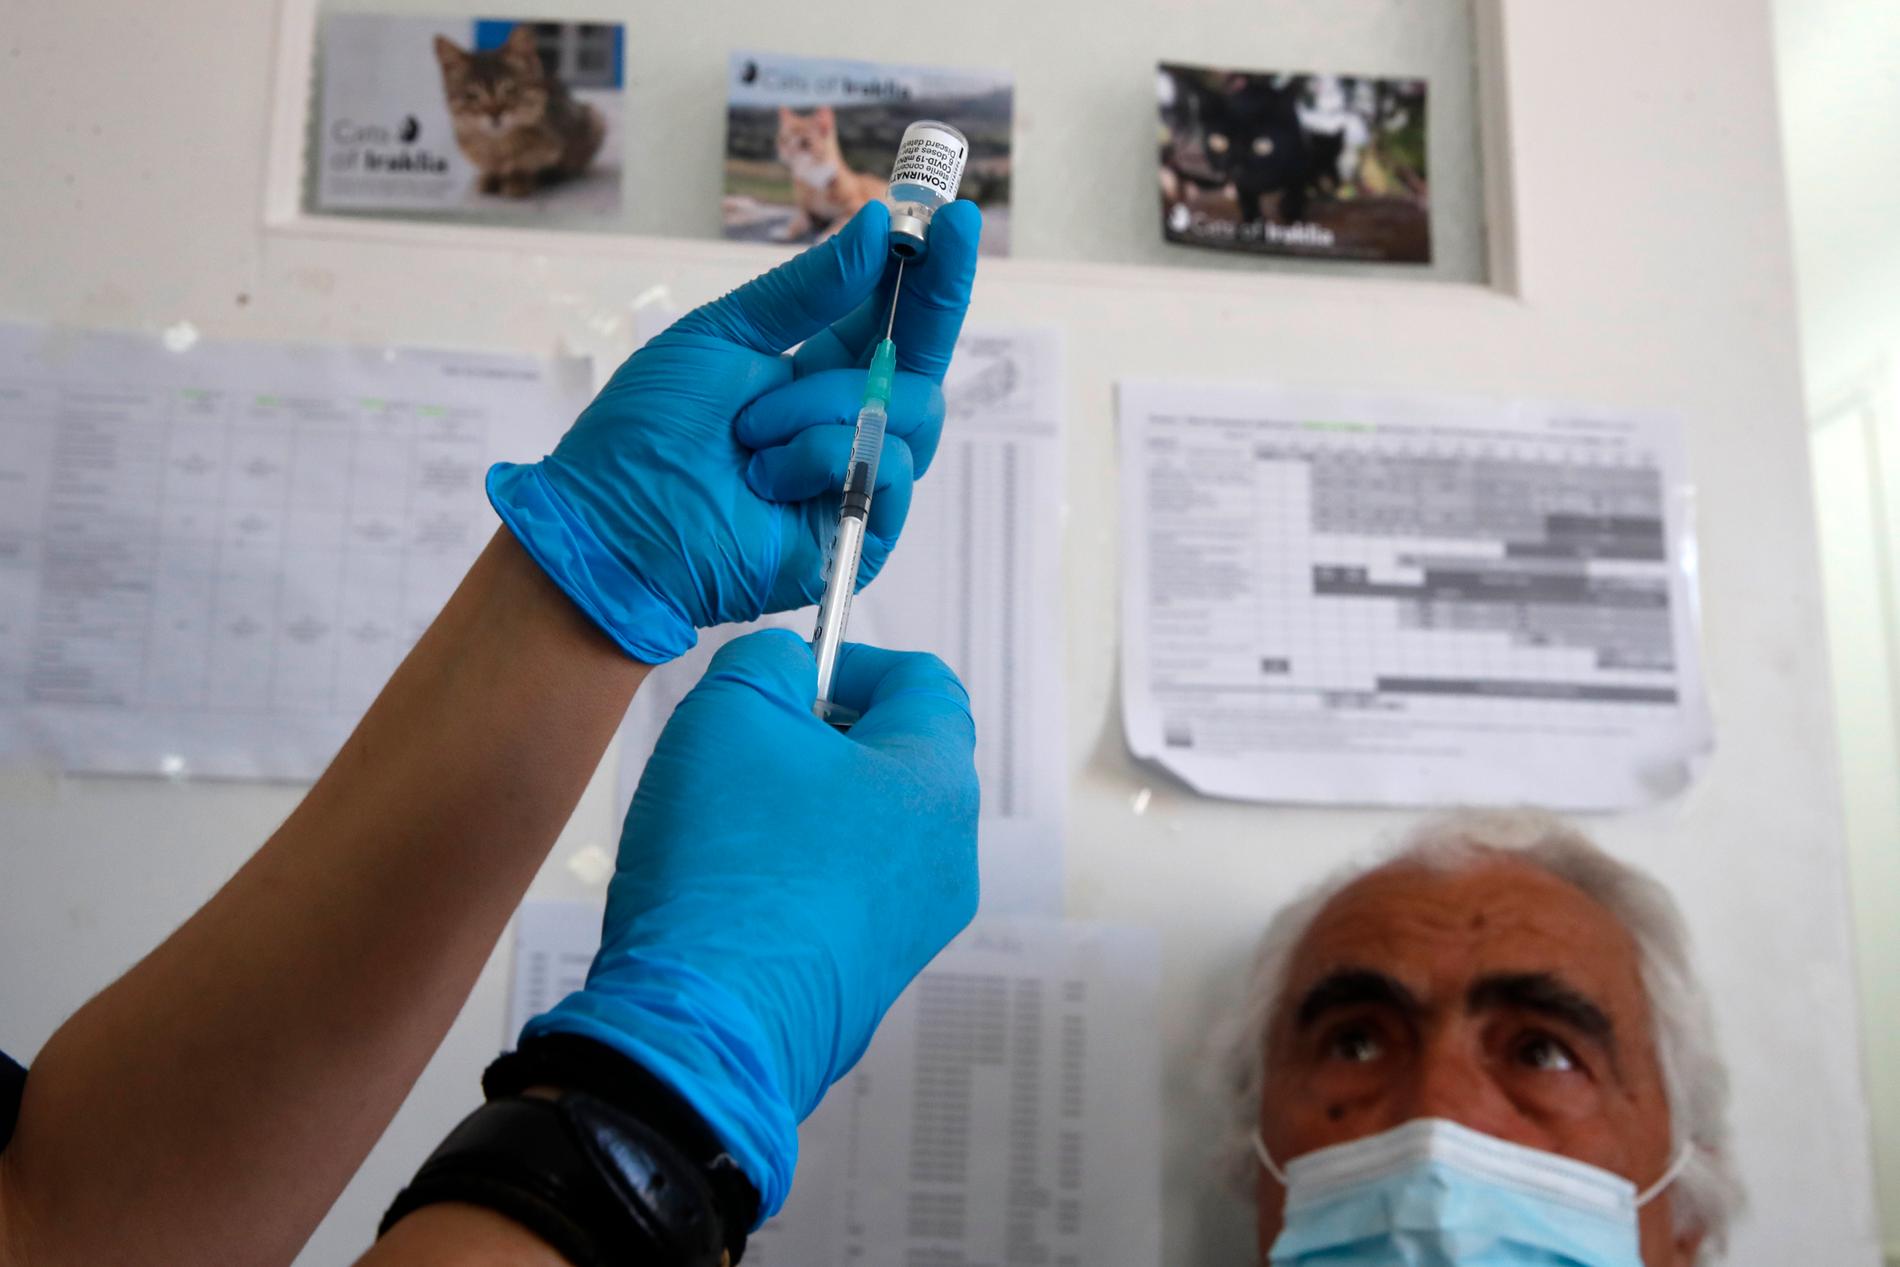 Nikos Gavalas på grekiska ön Iraklia vaccineras mot covid-19. Inför sommaren inleddes ett intensivt vaccinationsprogram för de grekiska öarna, för att få alla lokalbor vaccinerade inför den, för öarna så viktiga, turistsäsongen.